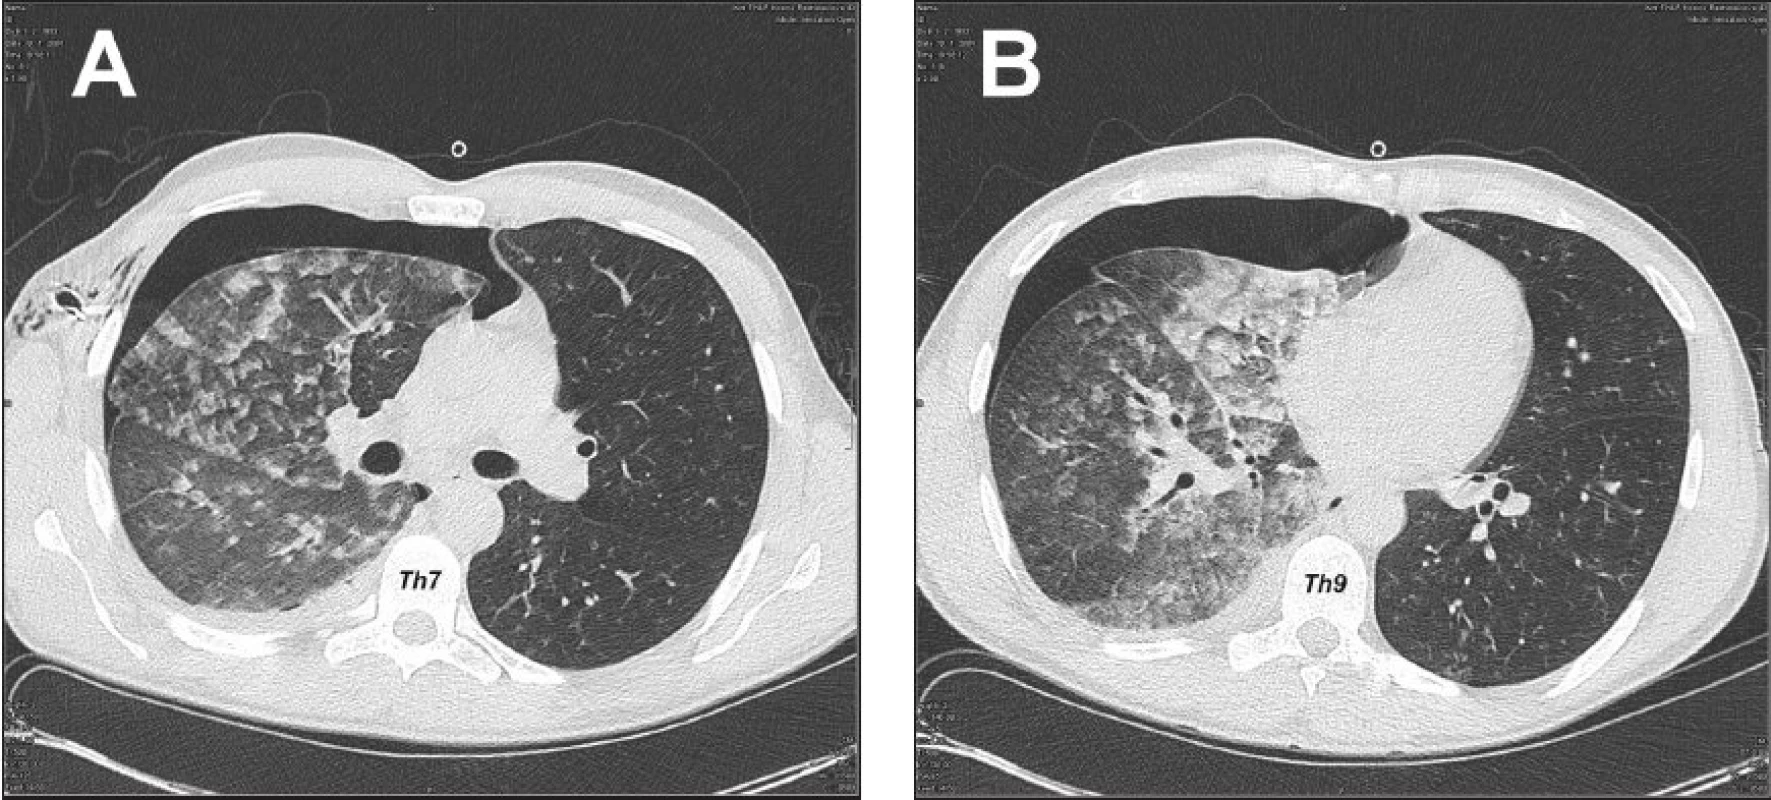 CT hrudníka 5 hod po drenáži hrudníkovej dutiny, svedčiace najskôr pre prítomnosť alveolárneho edému vpravo, s incipientnými známkami edematóznych zmien aj v ľavých pľúcach, fluidotorax vpravo a PNO vpravo (A – transverzálny rez v úrovni 7. hrudného stavca, B – transverzálny rez v úrovni 9. hrudného stavca)
Fig. 3. Thoracic CT 5 hours following drainage of the thoracic cavity, suggesting presence of alveolar edema on the right, with incipient signs of edematous changes in the left lung, fluidothorax on the right and pneumothorax on the right (A – transverse section at the T-7level , B – transverse section at the T-9 level )